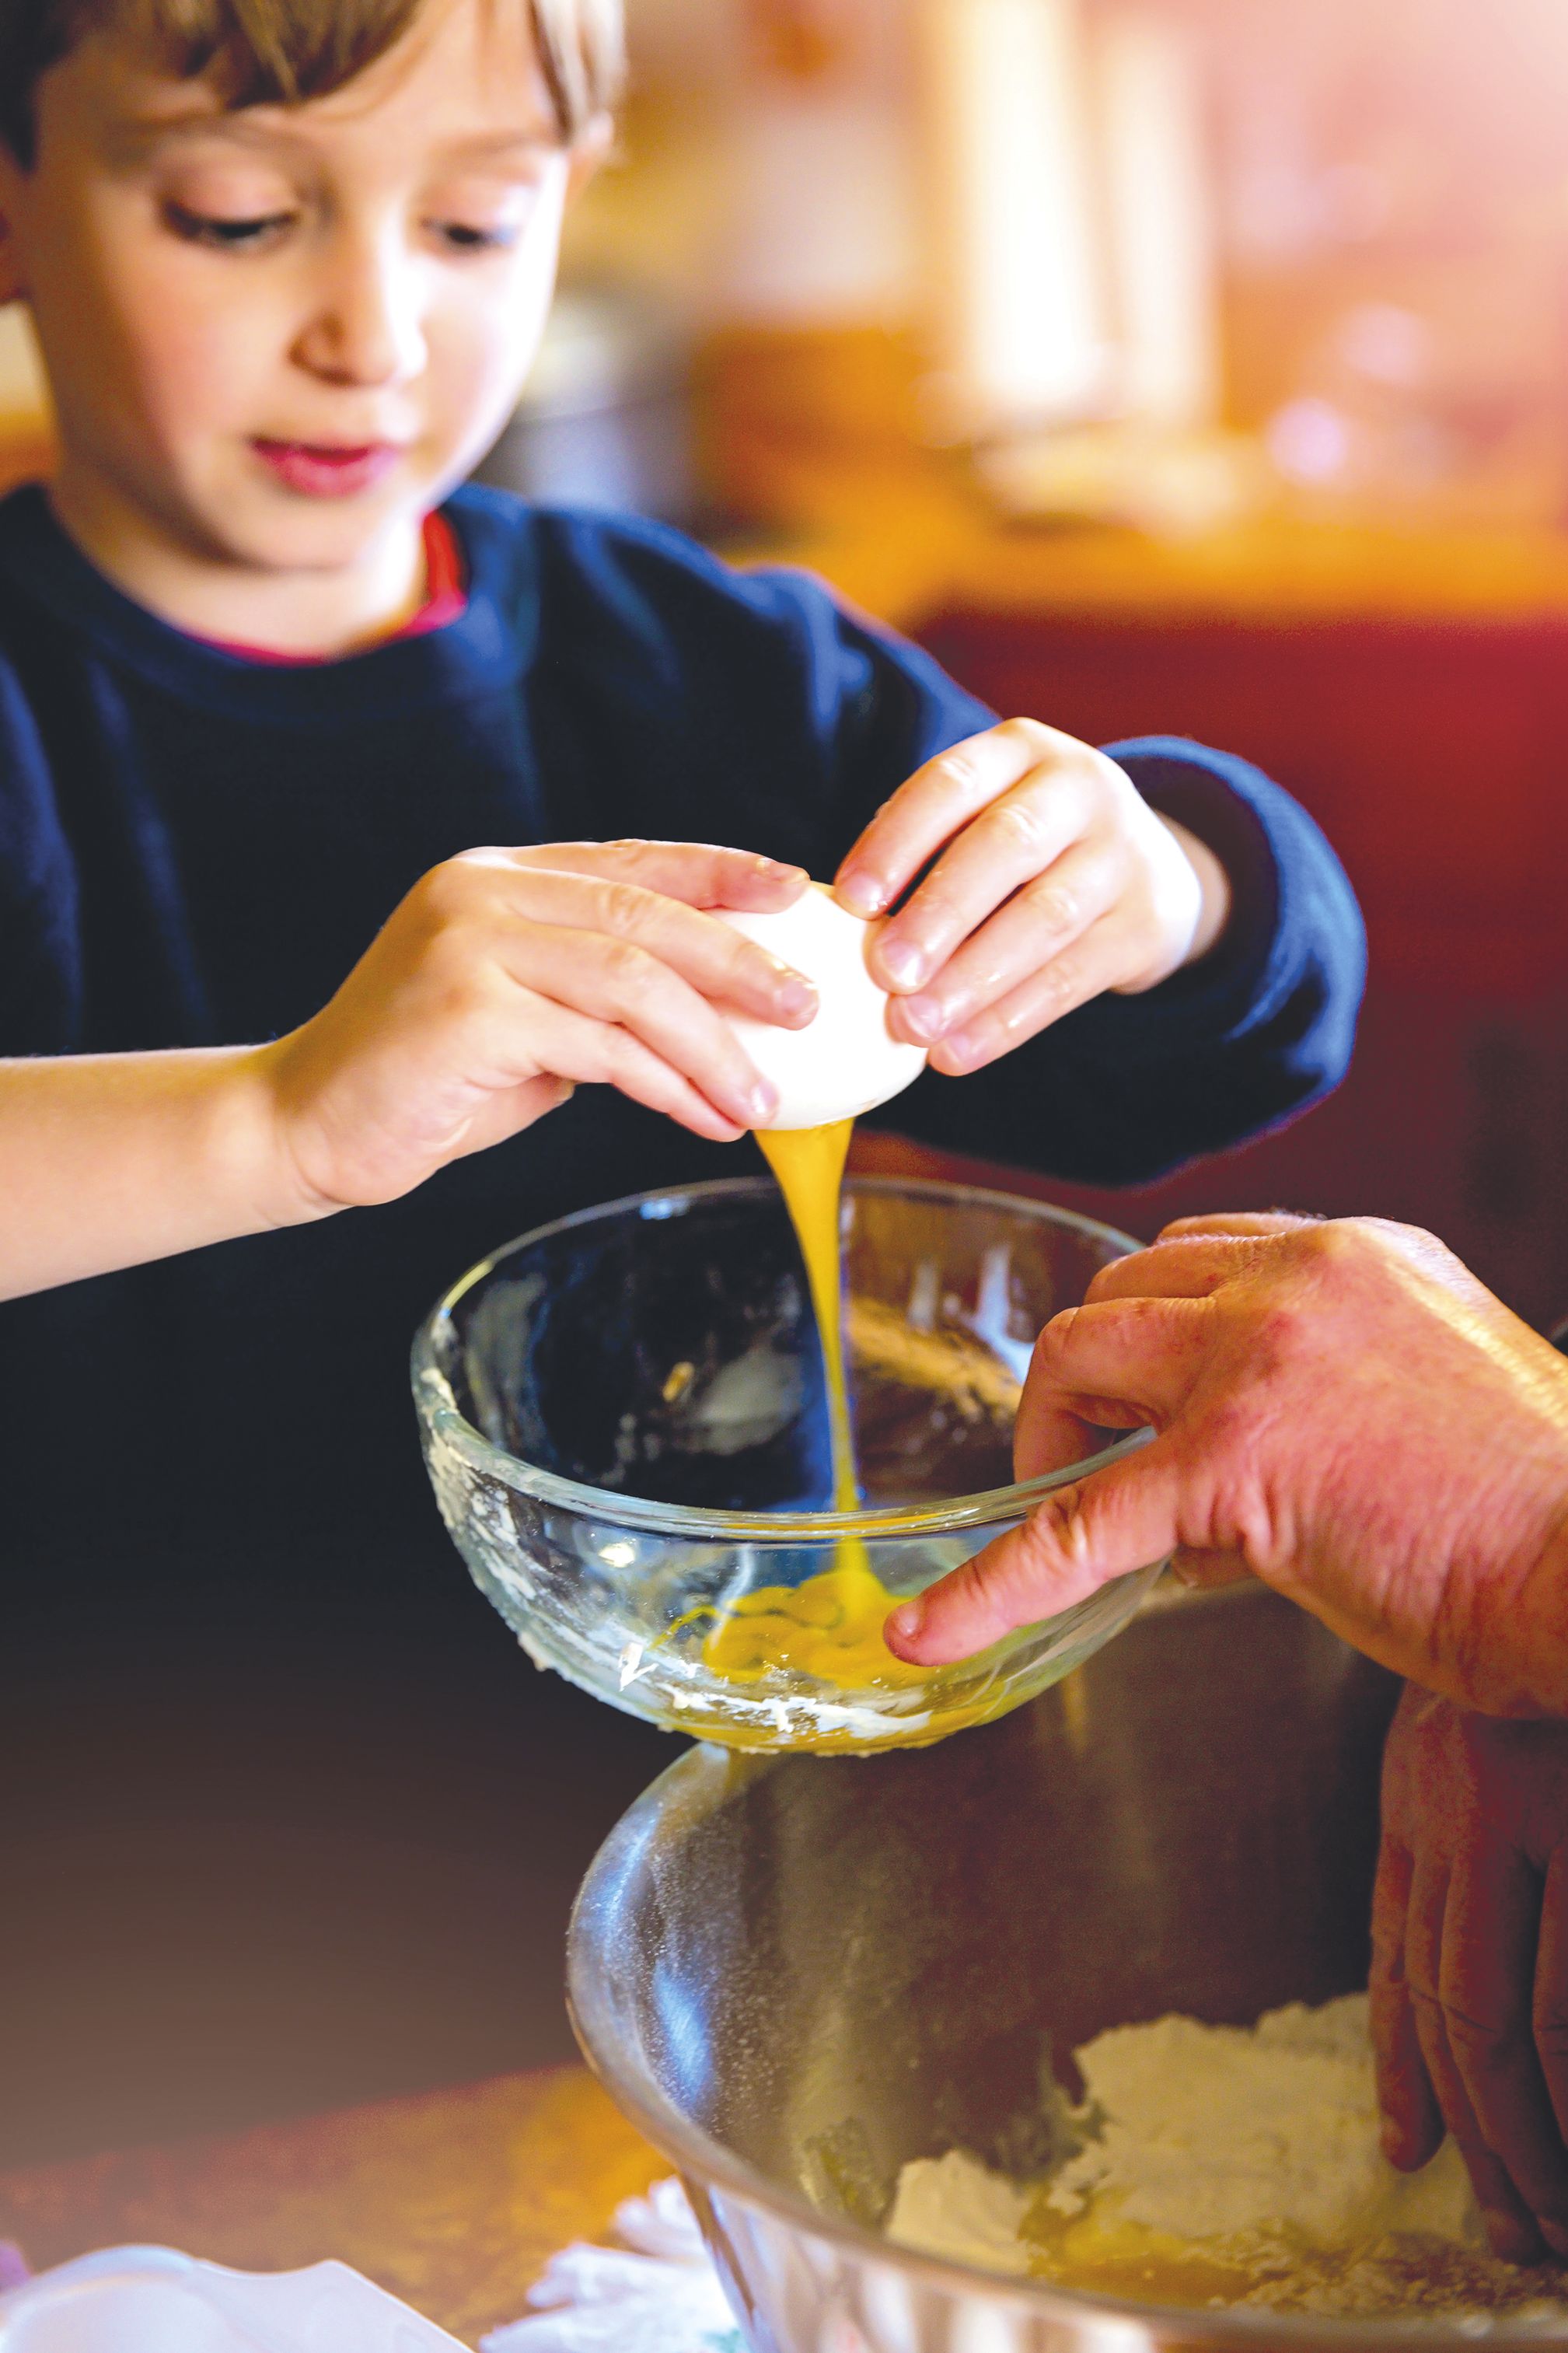 Transmettre aux enfants le plaisir de cuisiner est l’une des meilleures façons de maîtriser son alimentation, dont le sel.